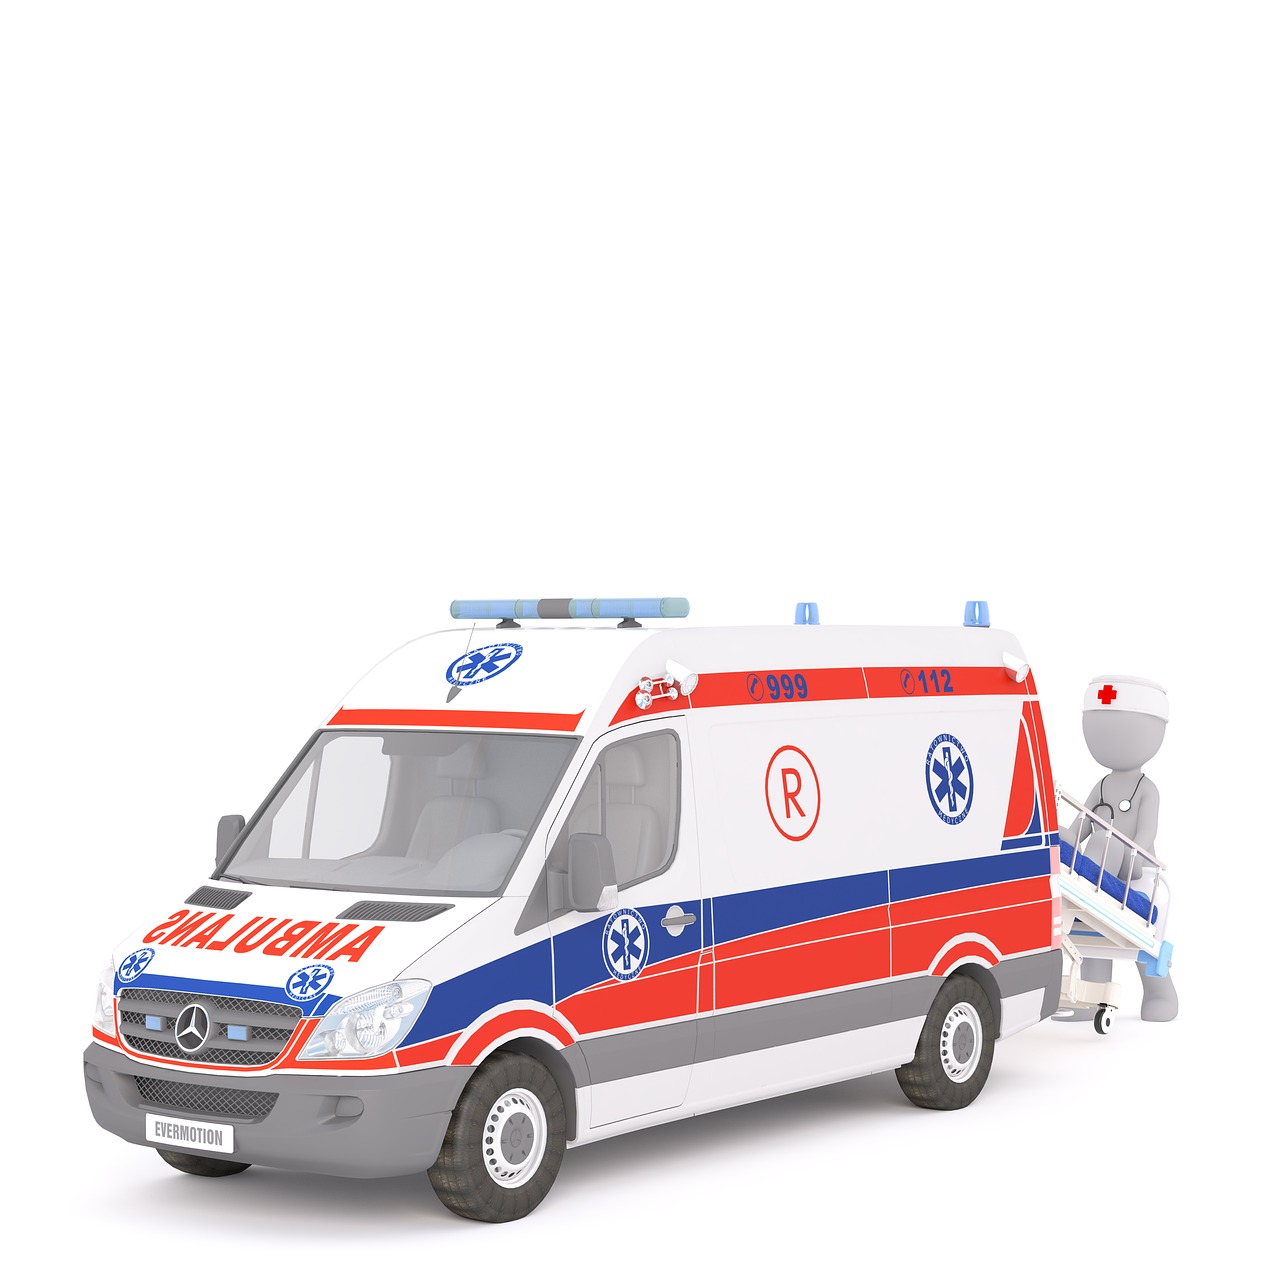 ambulance first aid white male free photo